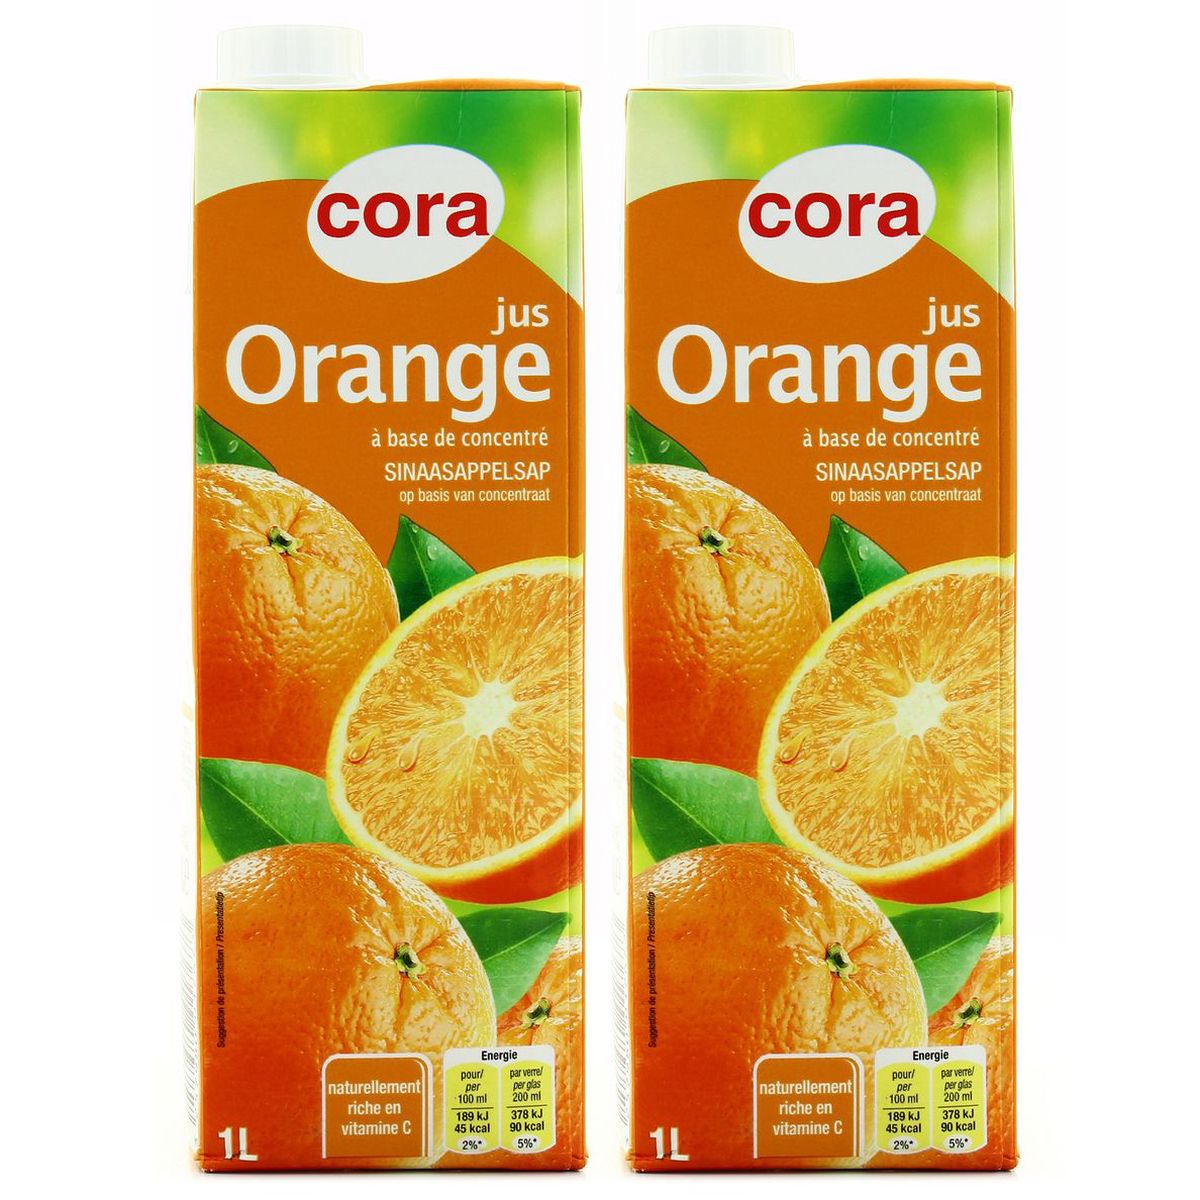 Achat Vente Promotion Cora Jus D Orange Lot De 2 Briques De 1l